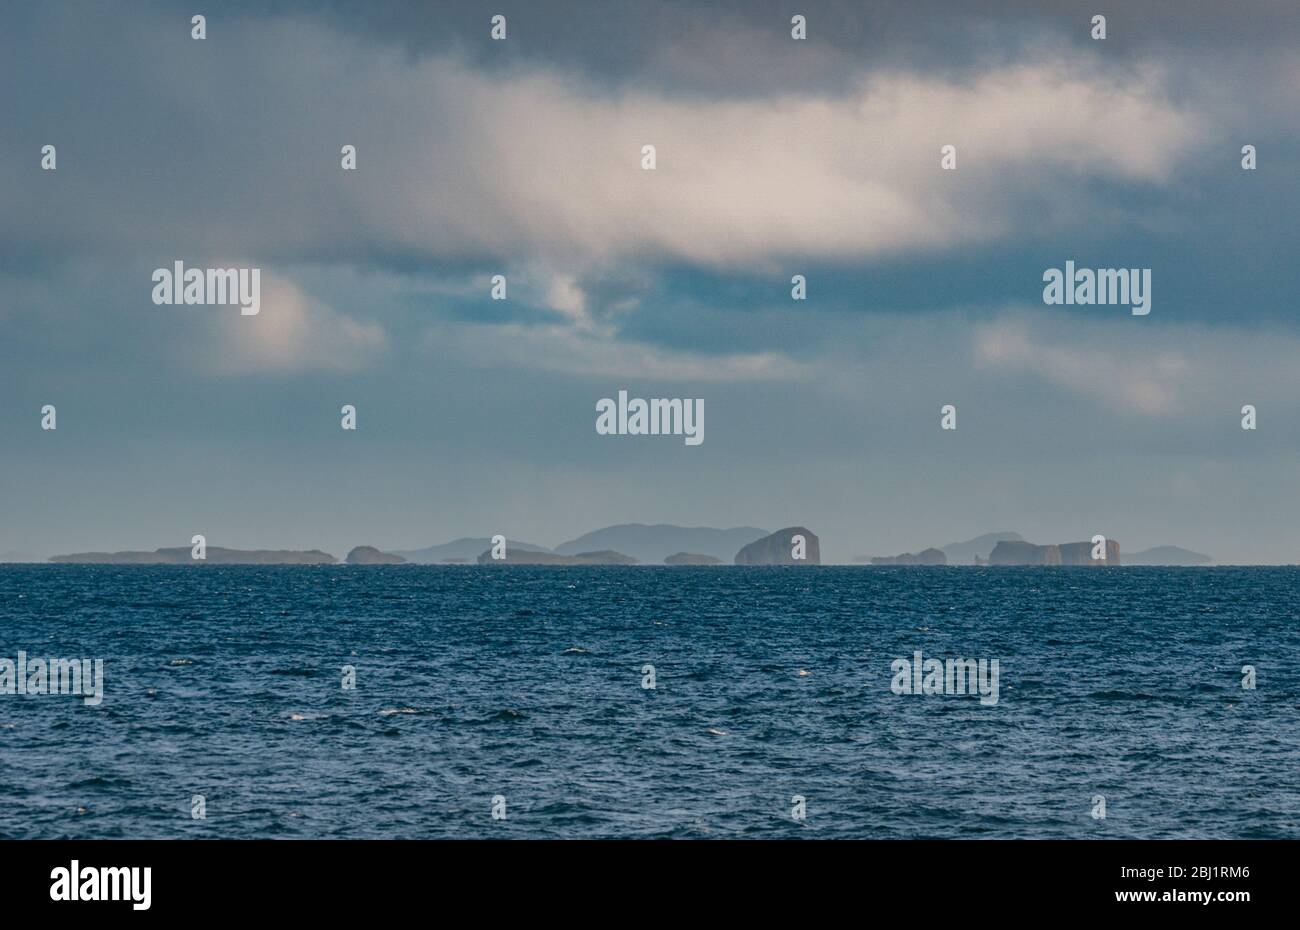 Shant Isles / Shiants - îles dans le Minch, Outer Hebrides, Ecosse, Royaume-Uni Banque D'Images